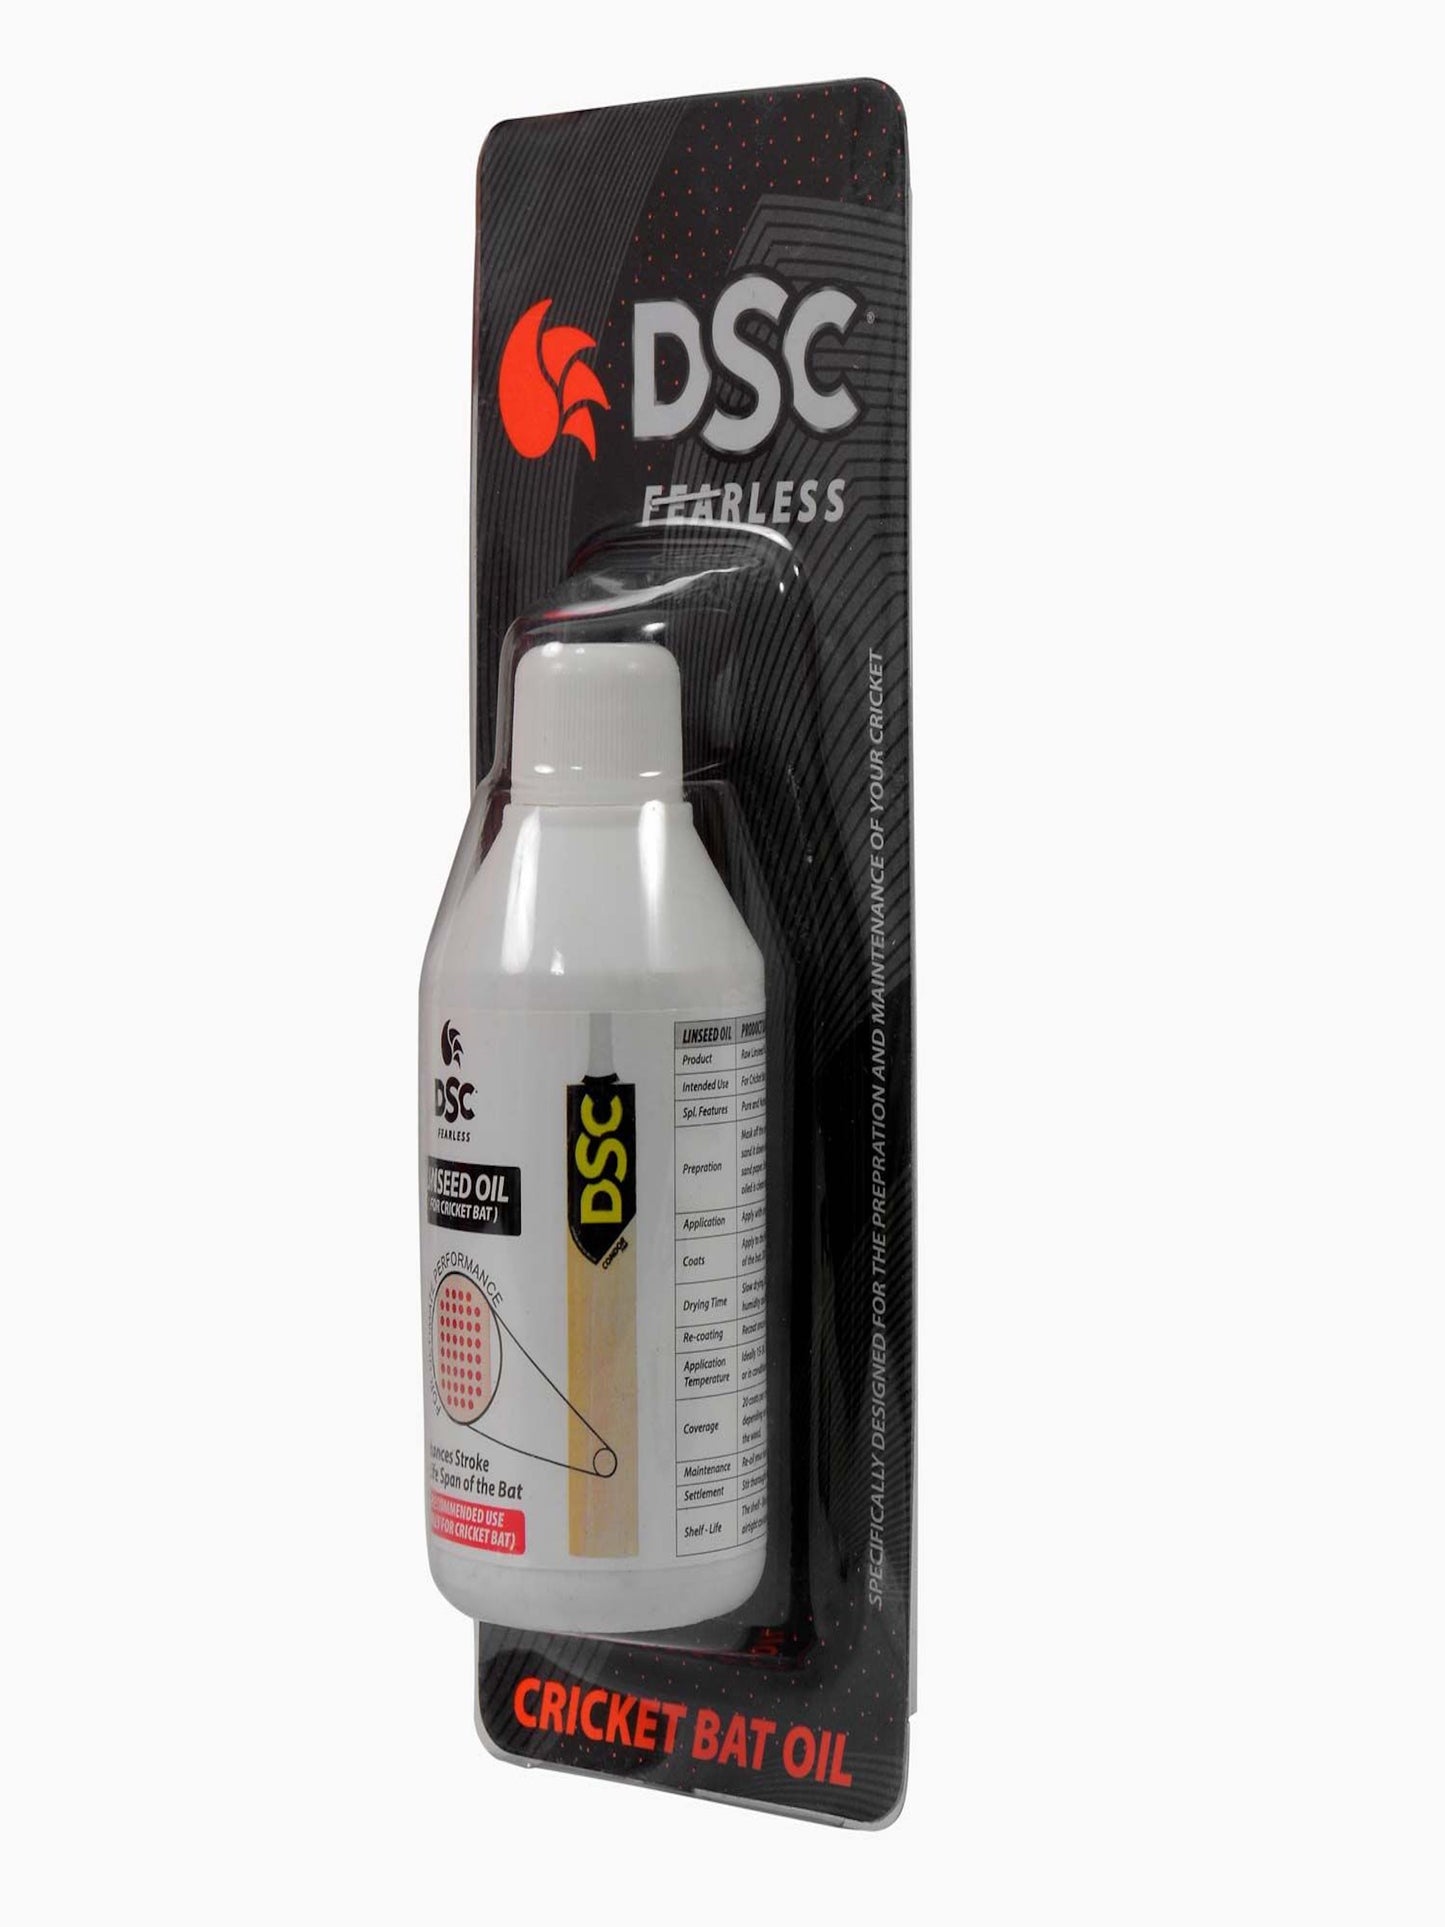 DSC Linseed Oil